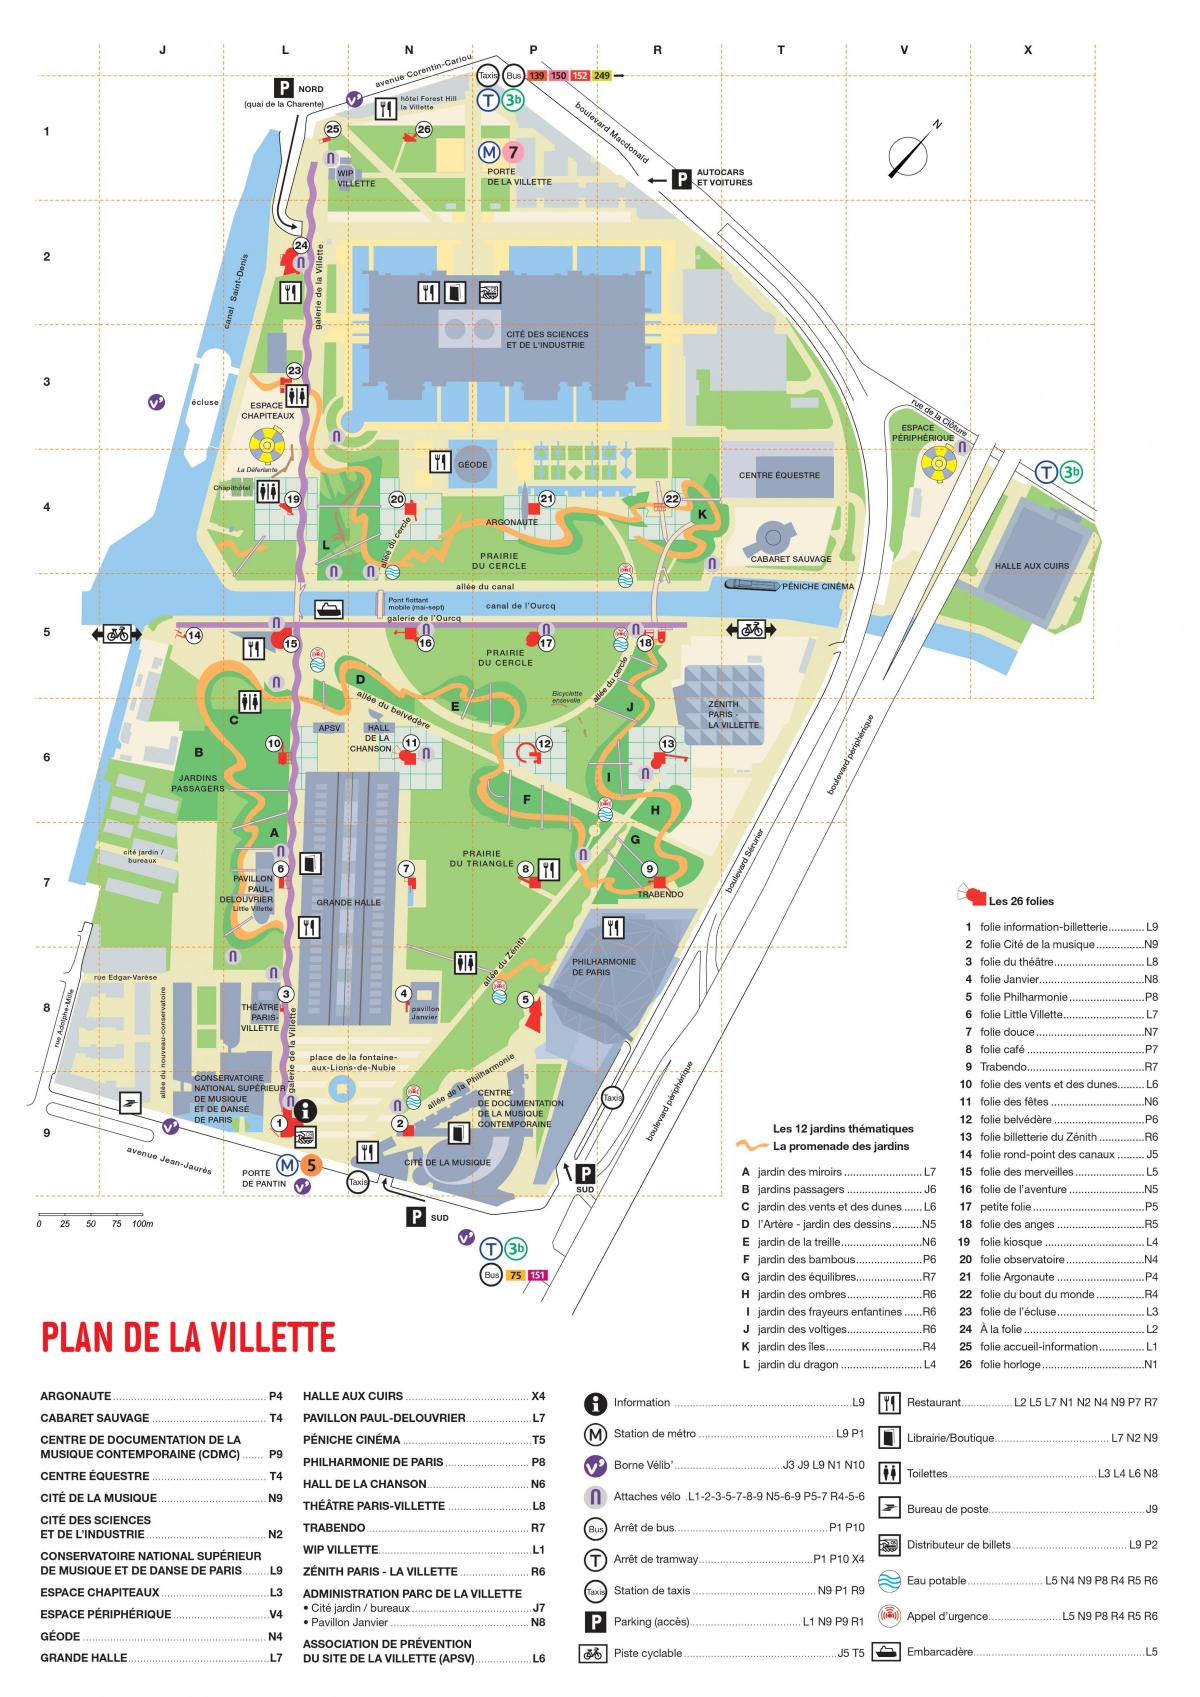 מפה של פארק דה לה וילט